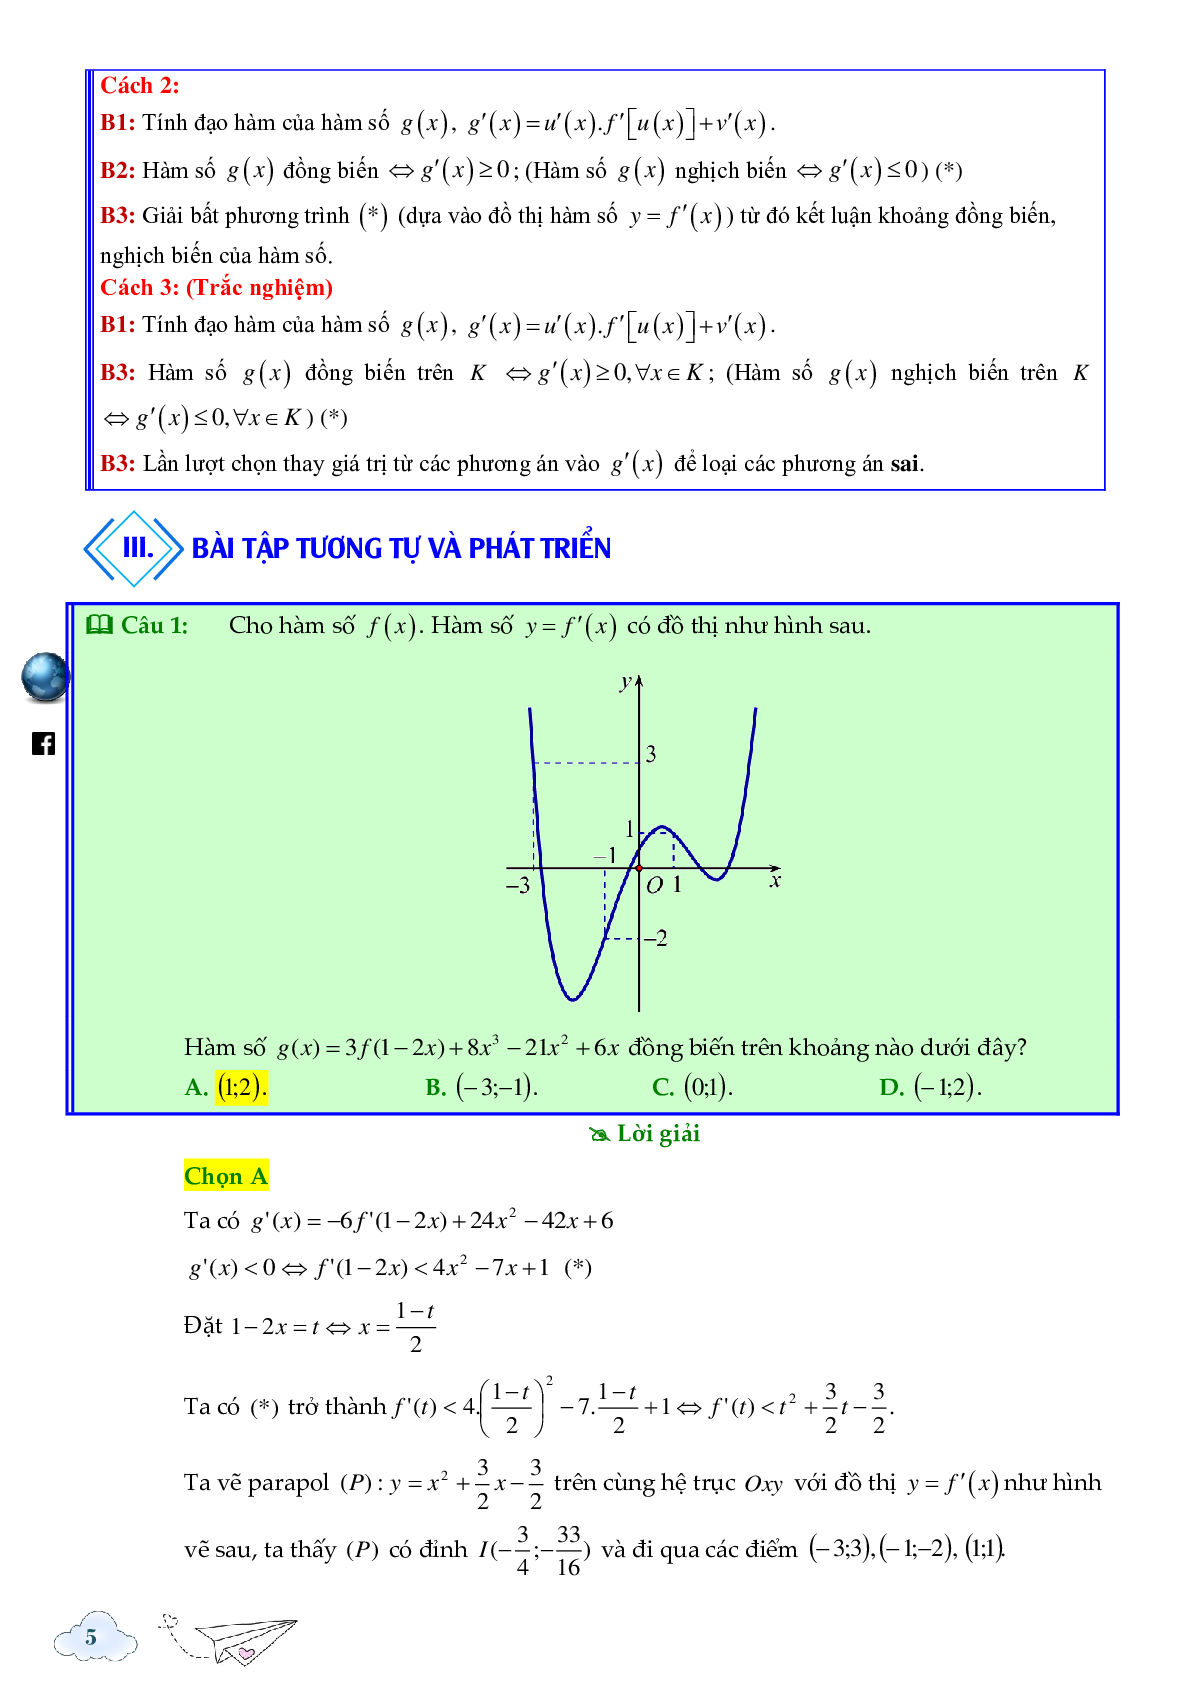 Tính đơn điệu của hàm ẩn được cho bởi đồ thị hàm f'(x) (trang 5)